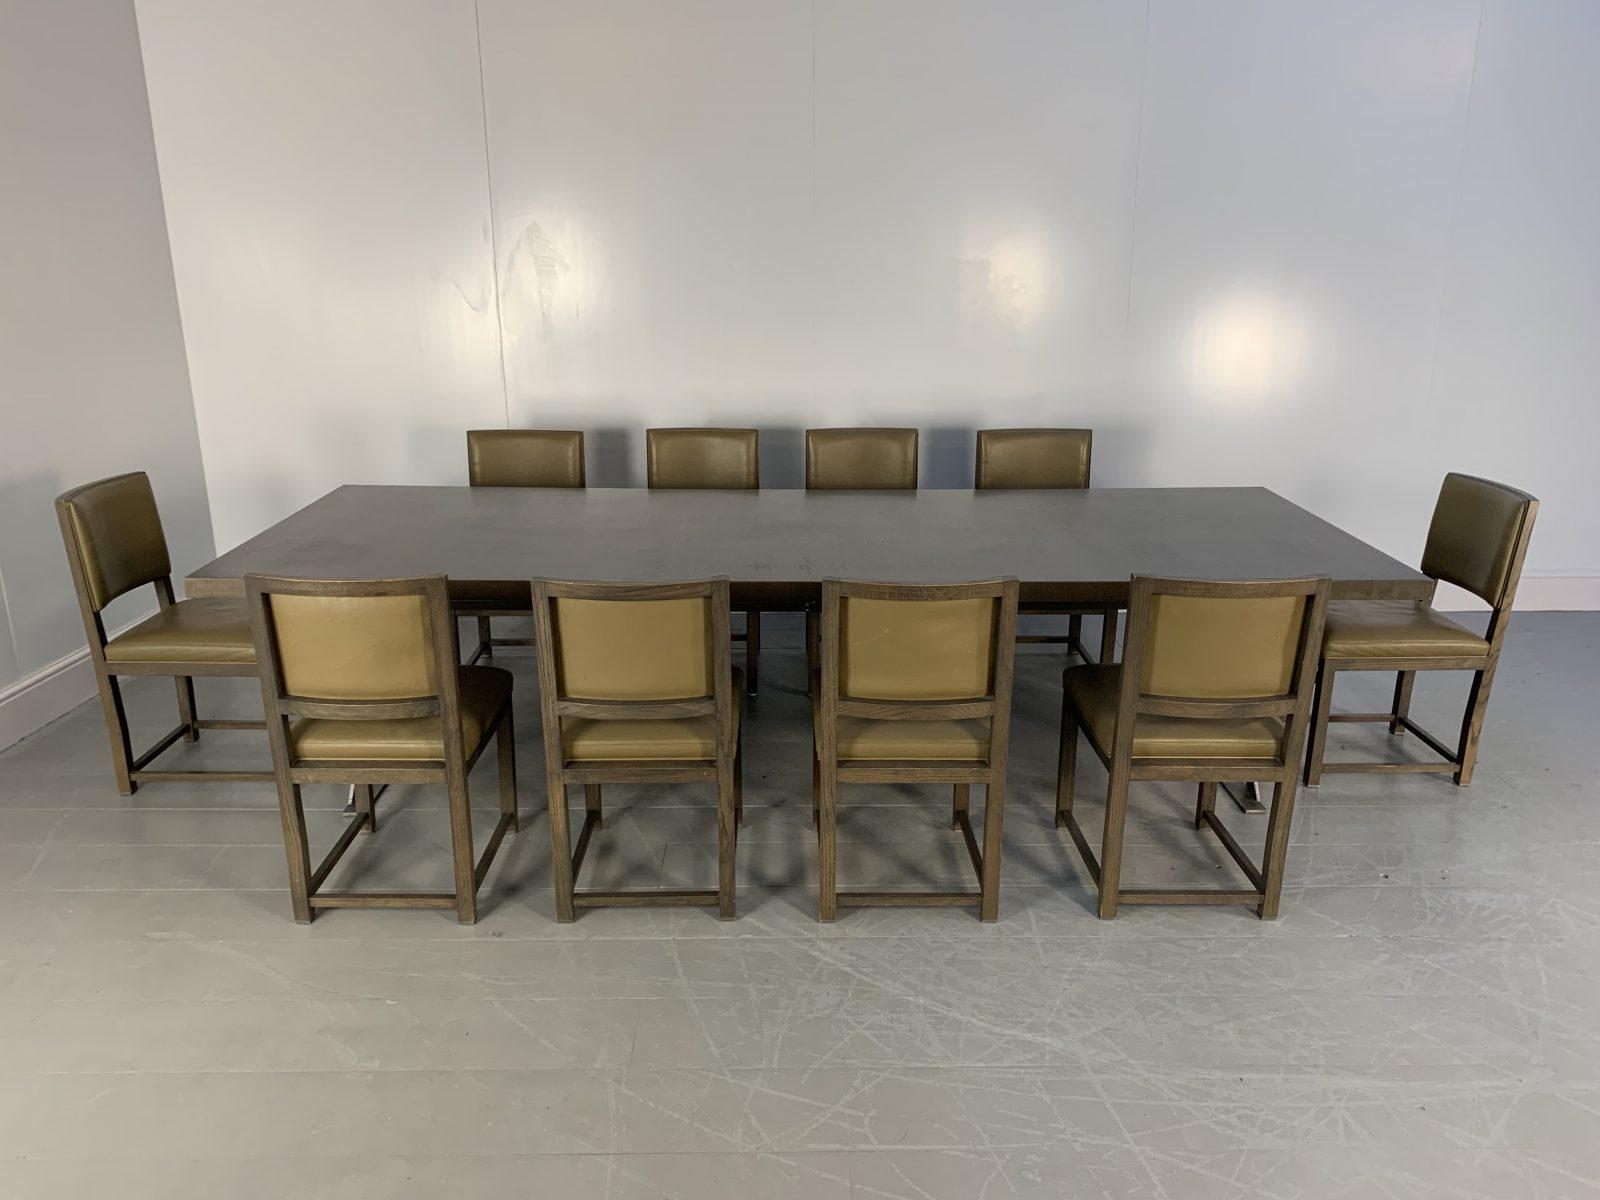 Bonjour les amis, et bienvenue à une nouvelle offre incontournable de Lord Browns Furniture, la première source de canapés et de chaises de qualité au Royaume-Uni.

L'offre comprend une sublime table à manger Max SMTR30 en chêne gris avec une base